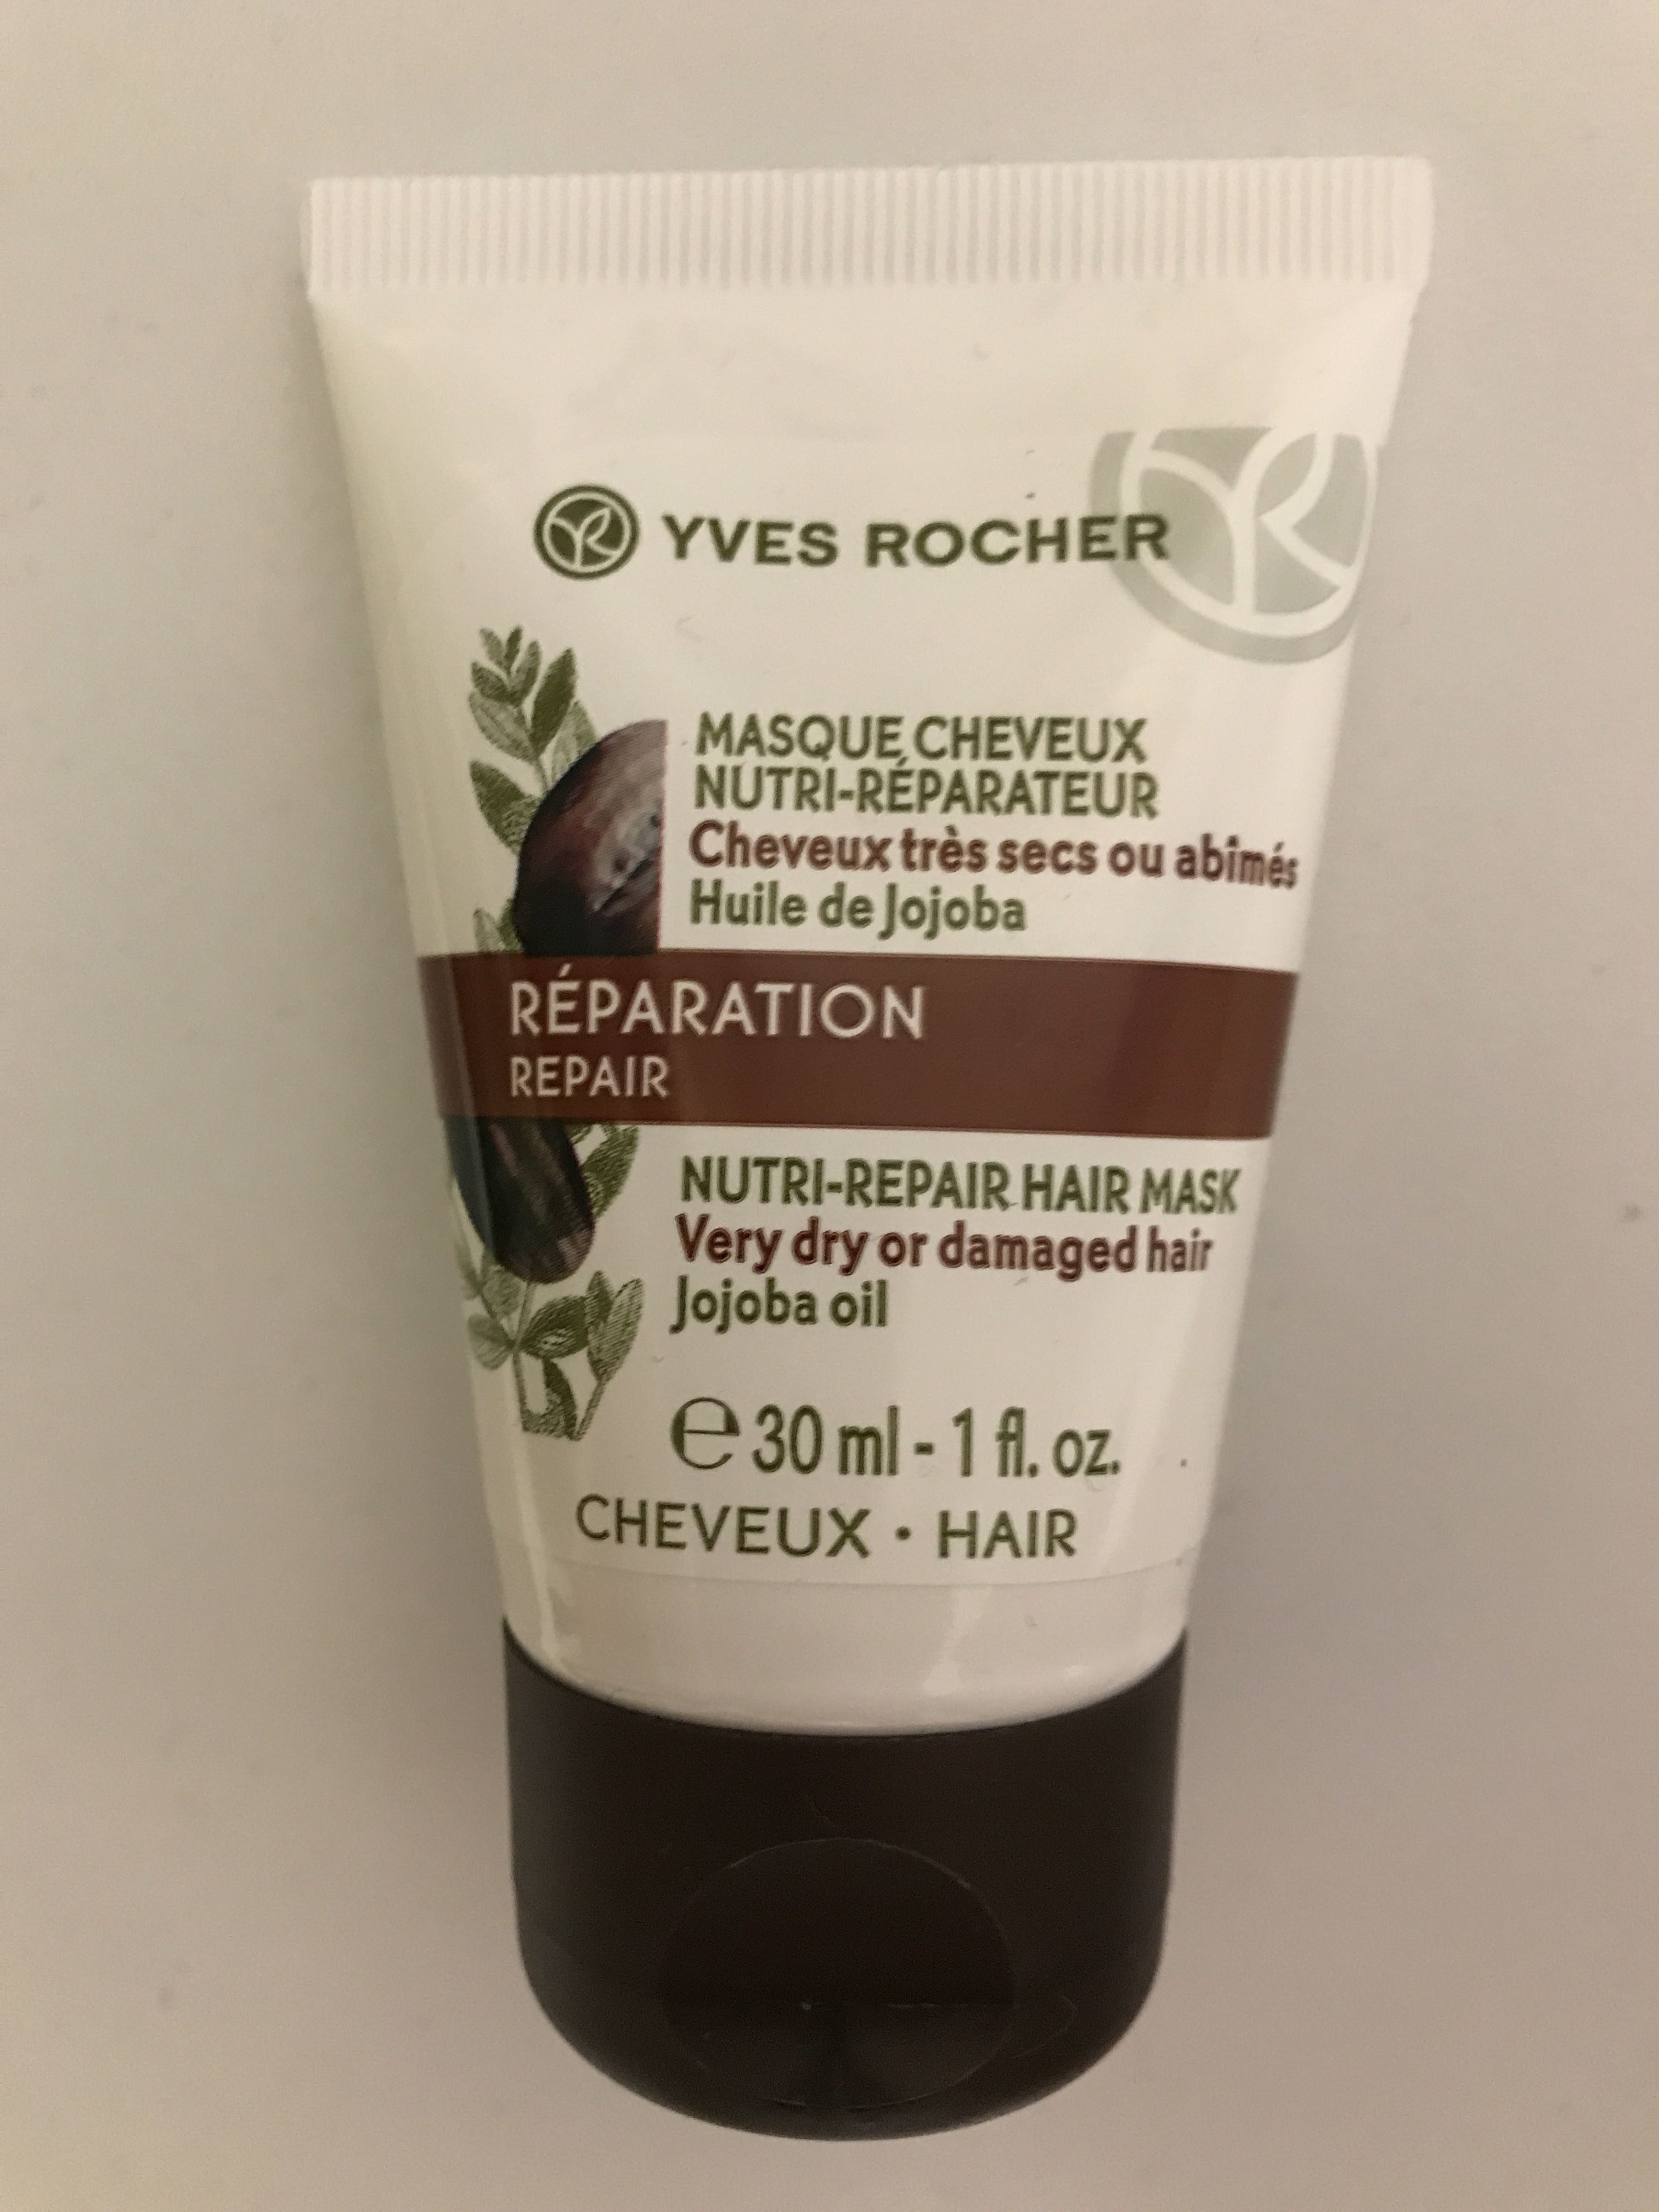 Masque Cheveux Nutri-Reparateur - Продукт - fr